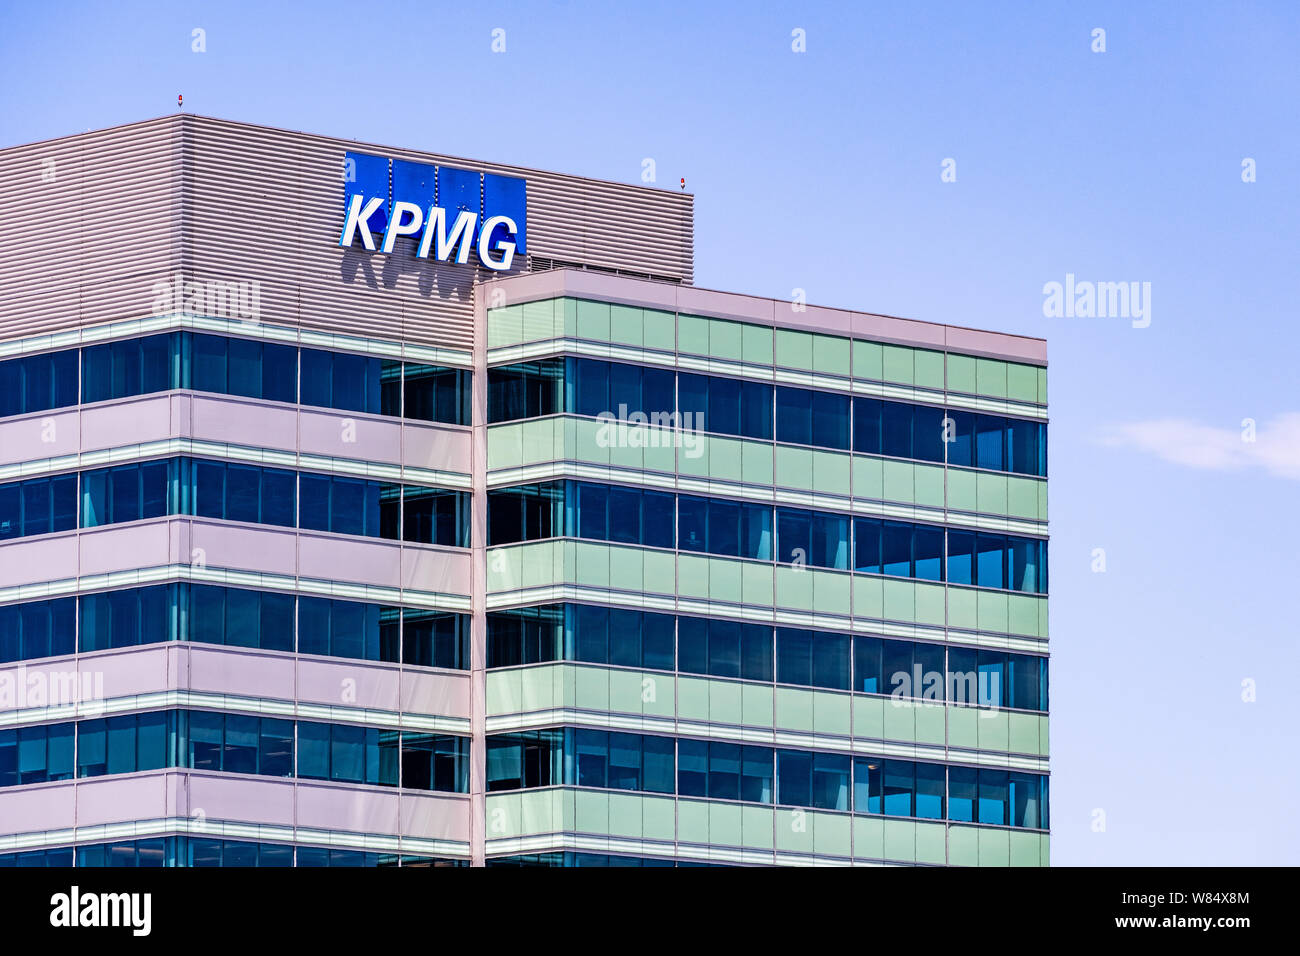 August 6, 2019 Sunnyvale/CA/USA - KPMG Bürogebäude in South San Francisco Bay Area; KPMG ist eines der vier großen accounting Organisationen Stockfoto